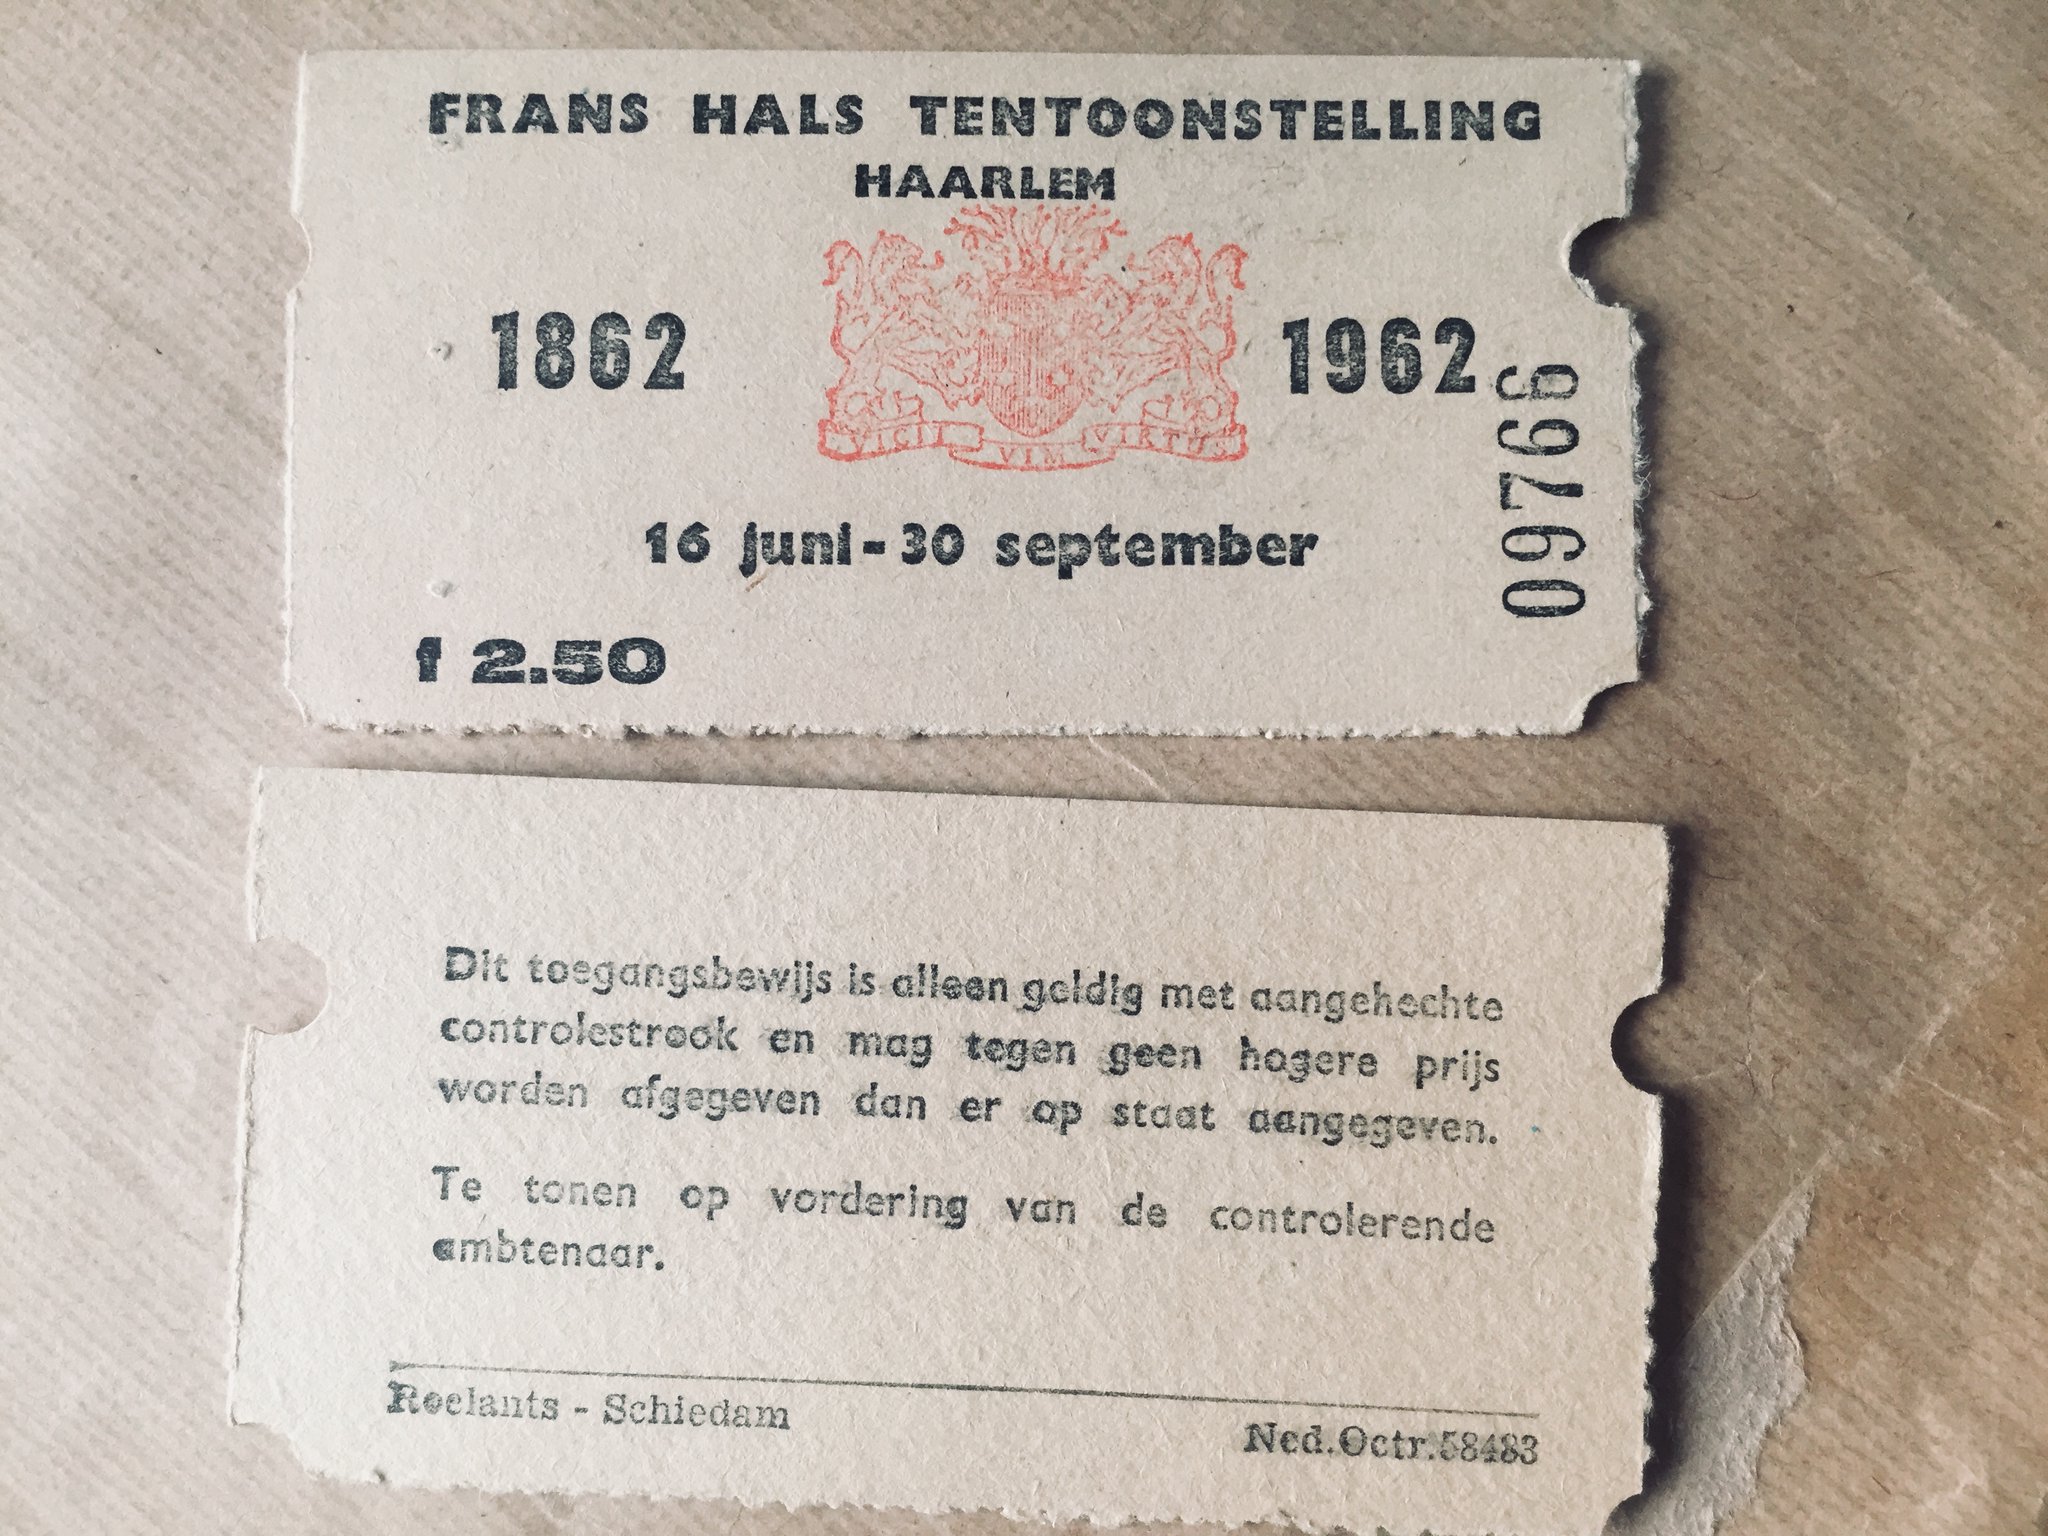 "Madeleine et ma mère étaient allées une fois en excursion à Haarlem", mais oui en effet j'ai retrouvé ces tickets dans la cave ! https://t.co/kva4DfiZ47